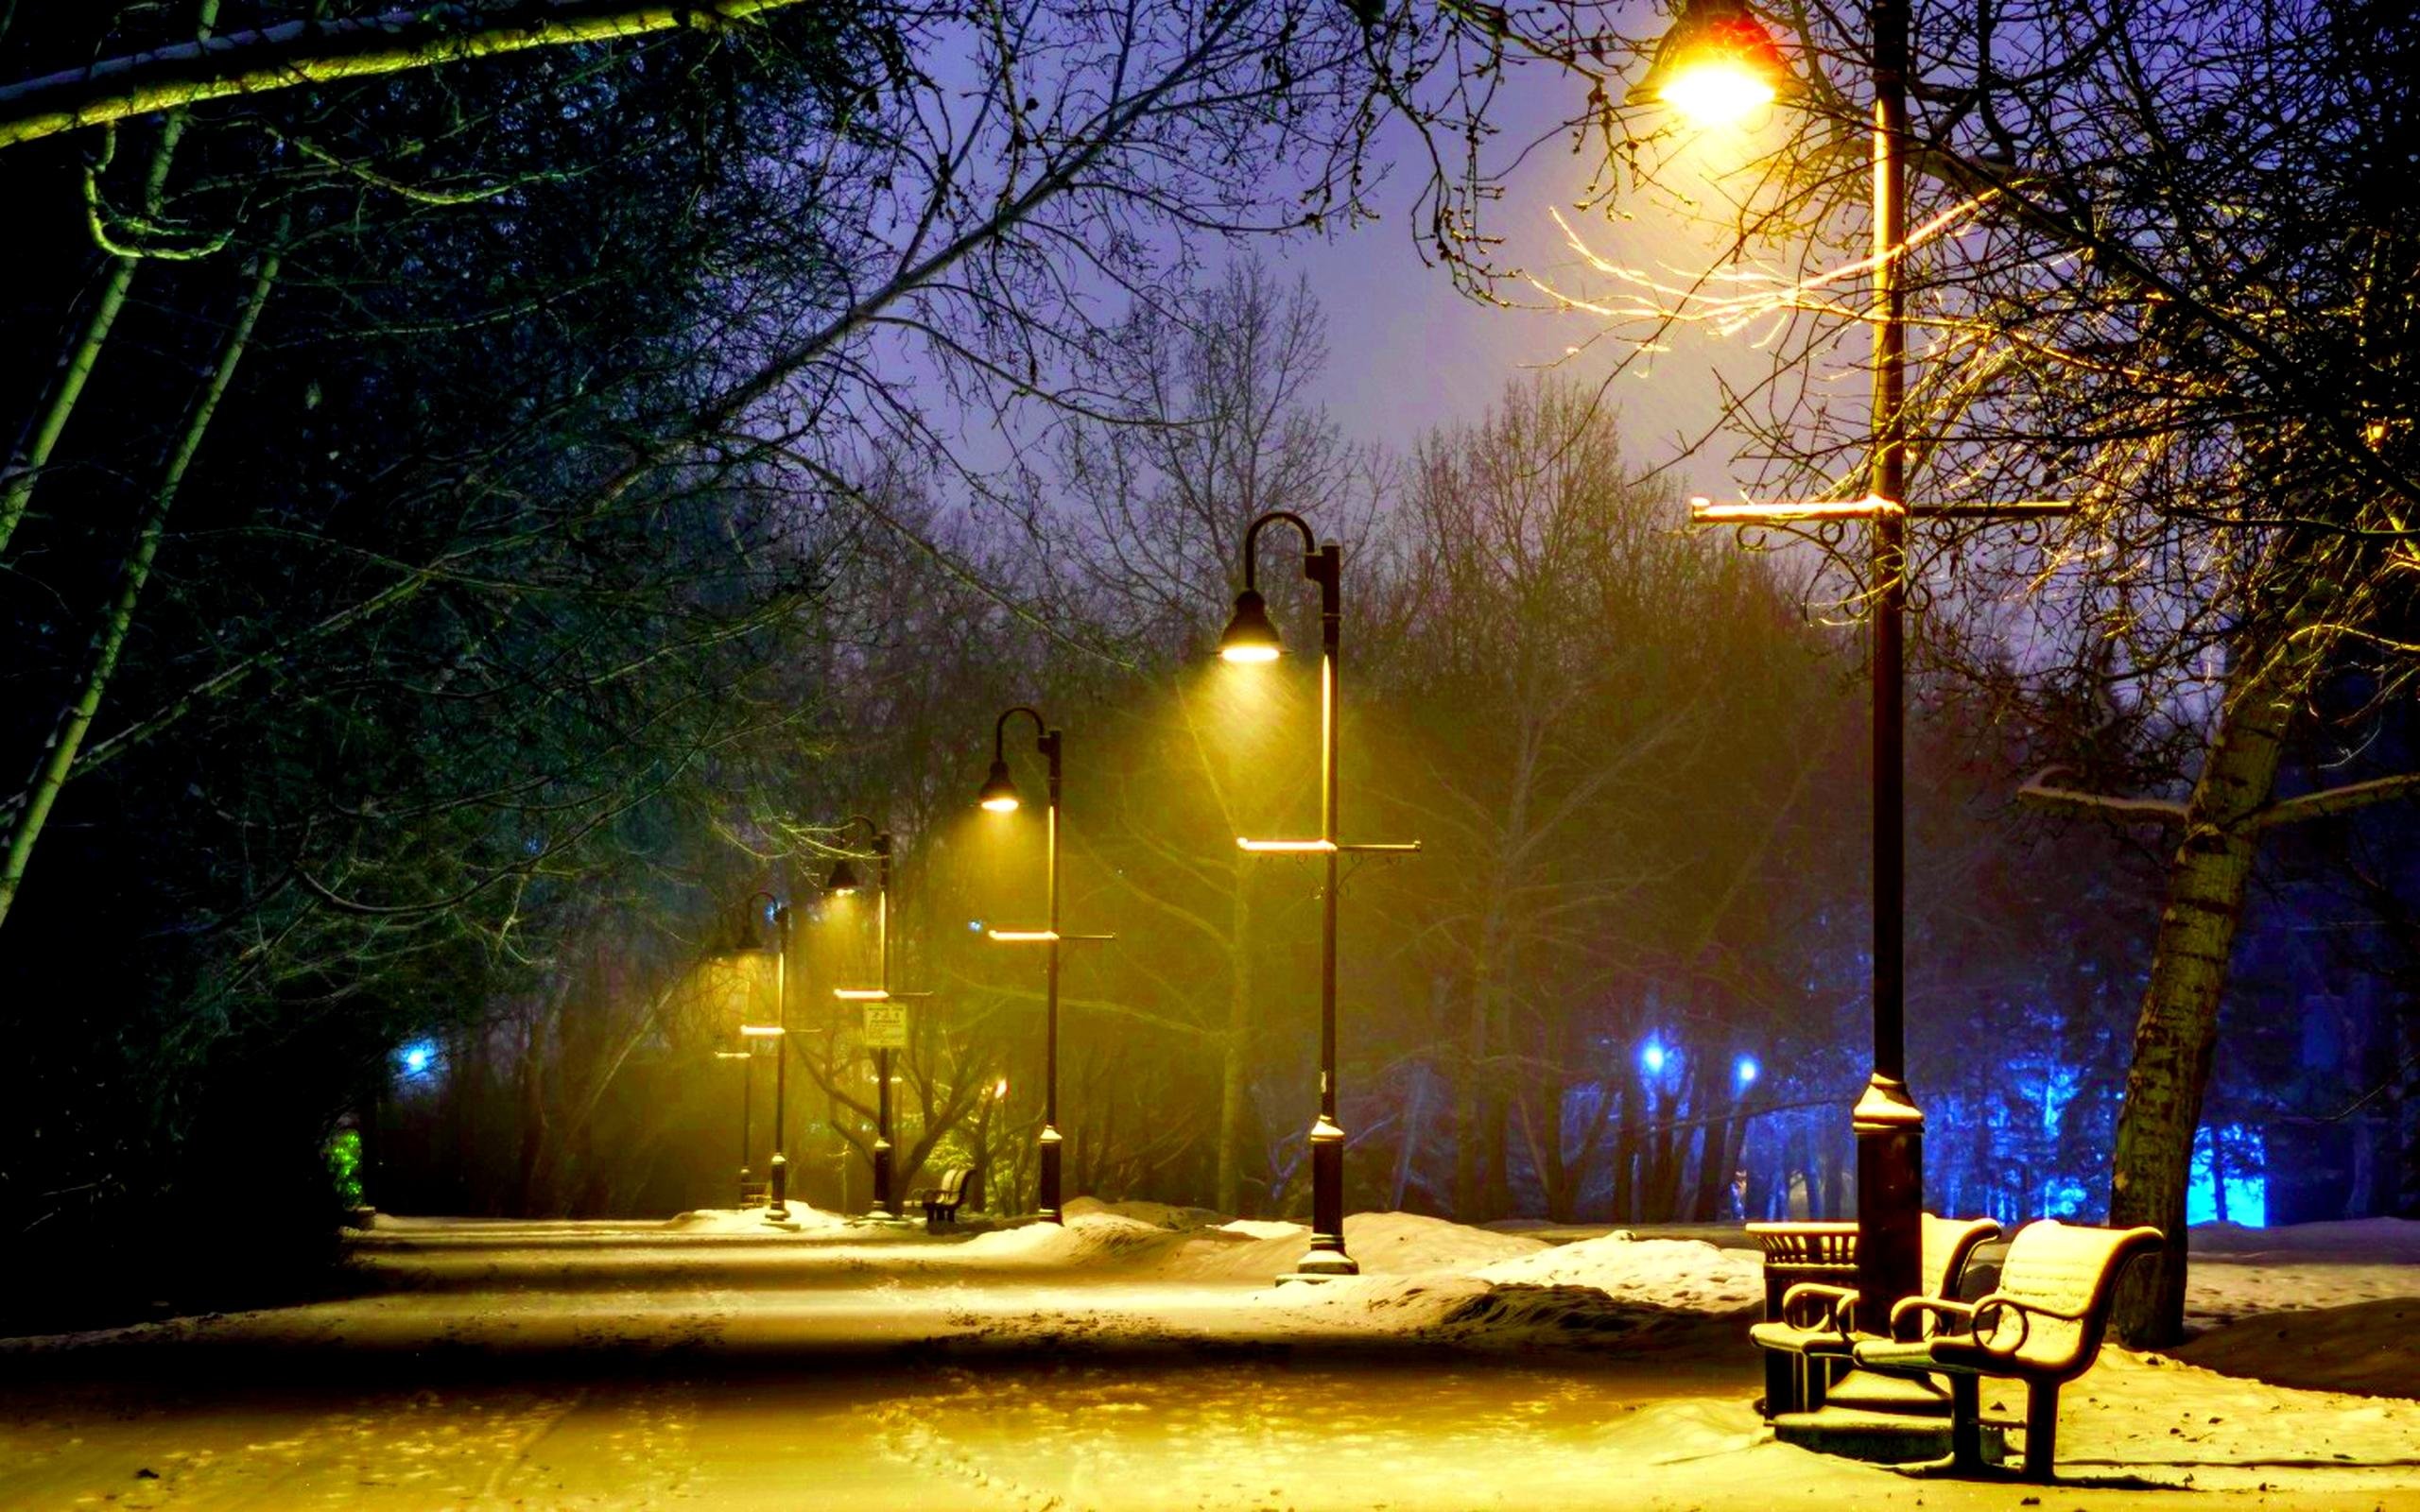 Вечер свет фонаря. Освещение улиц. Уличное освещение зимой. Аллея с фонарями. Парк вечером.